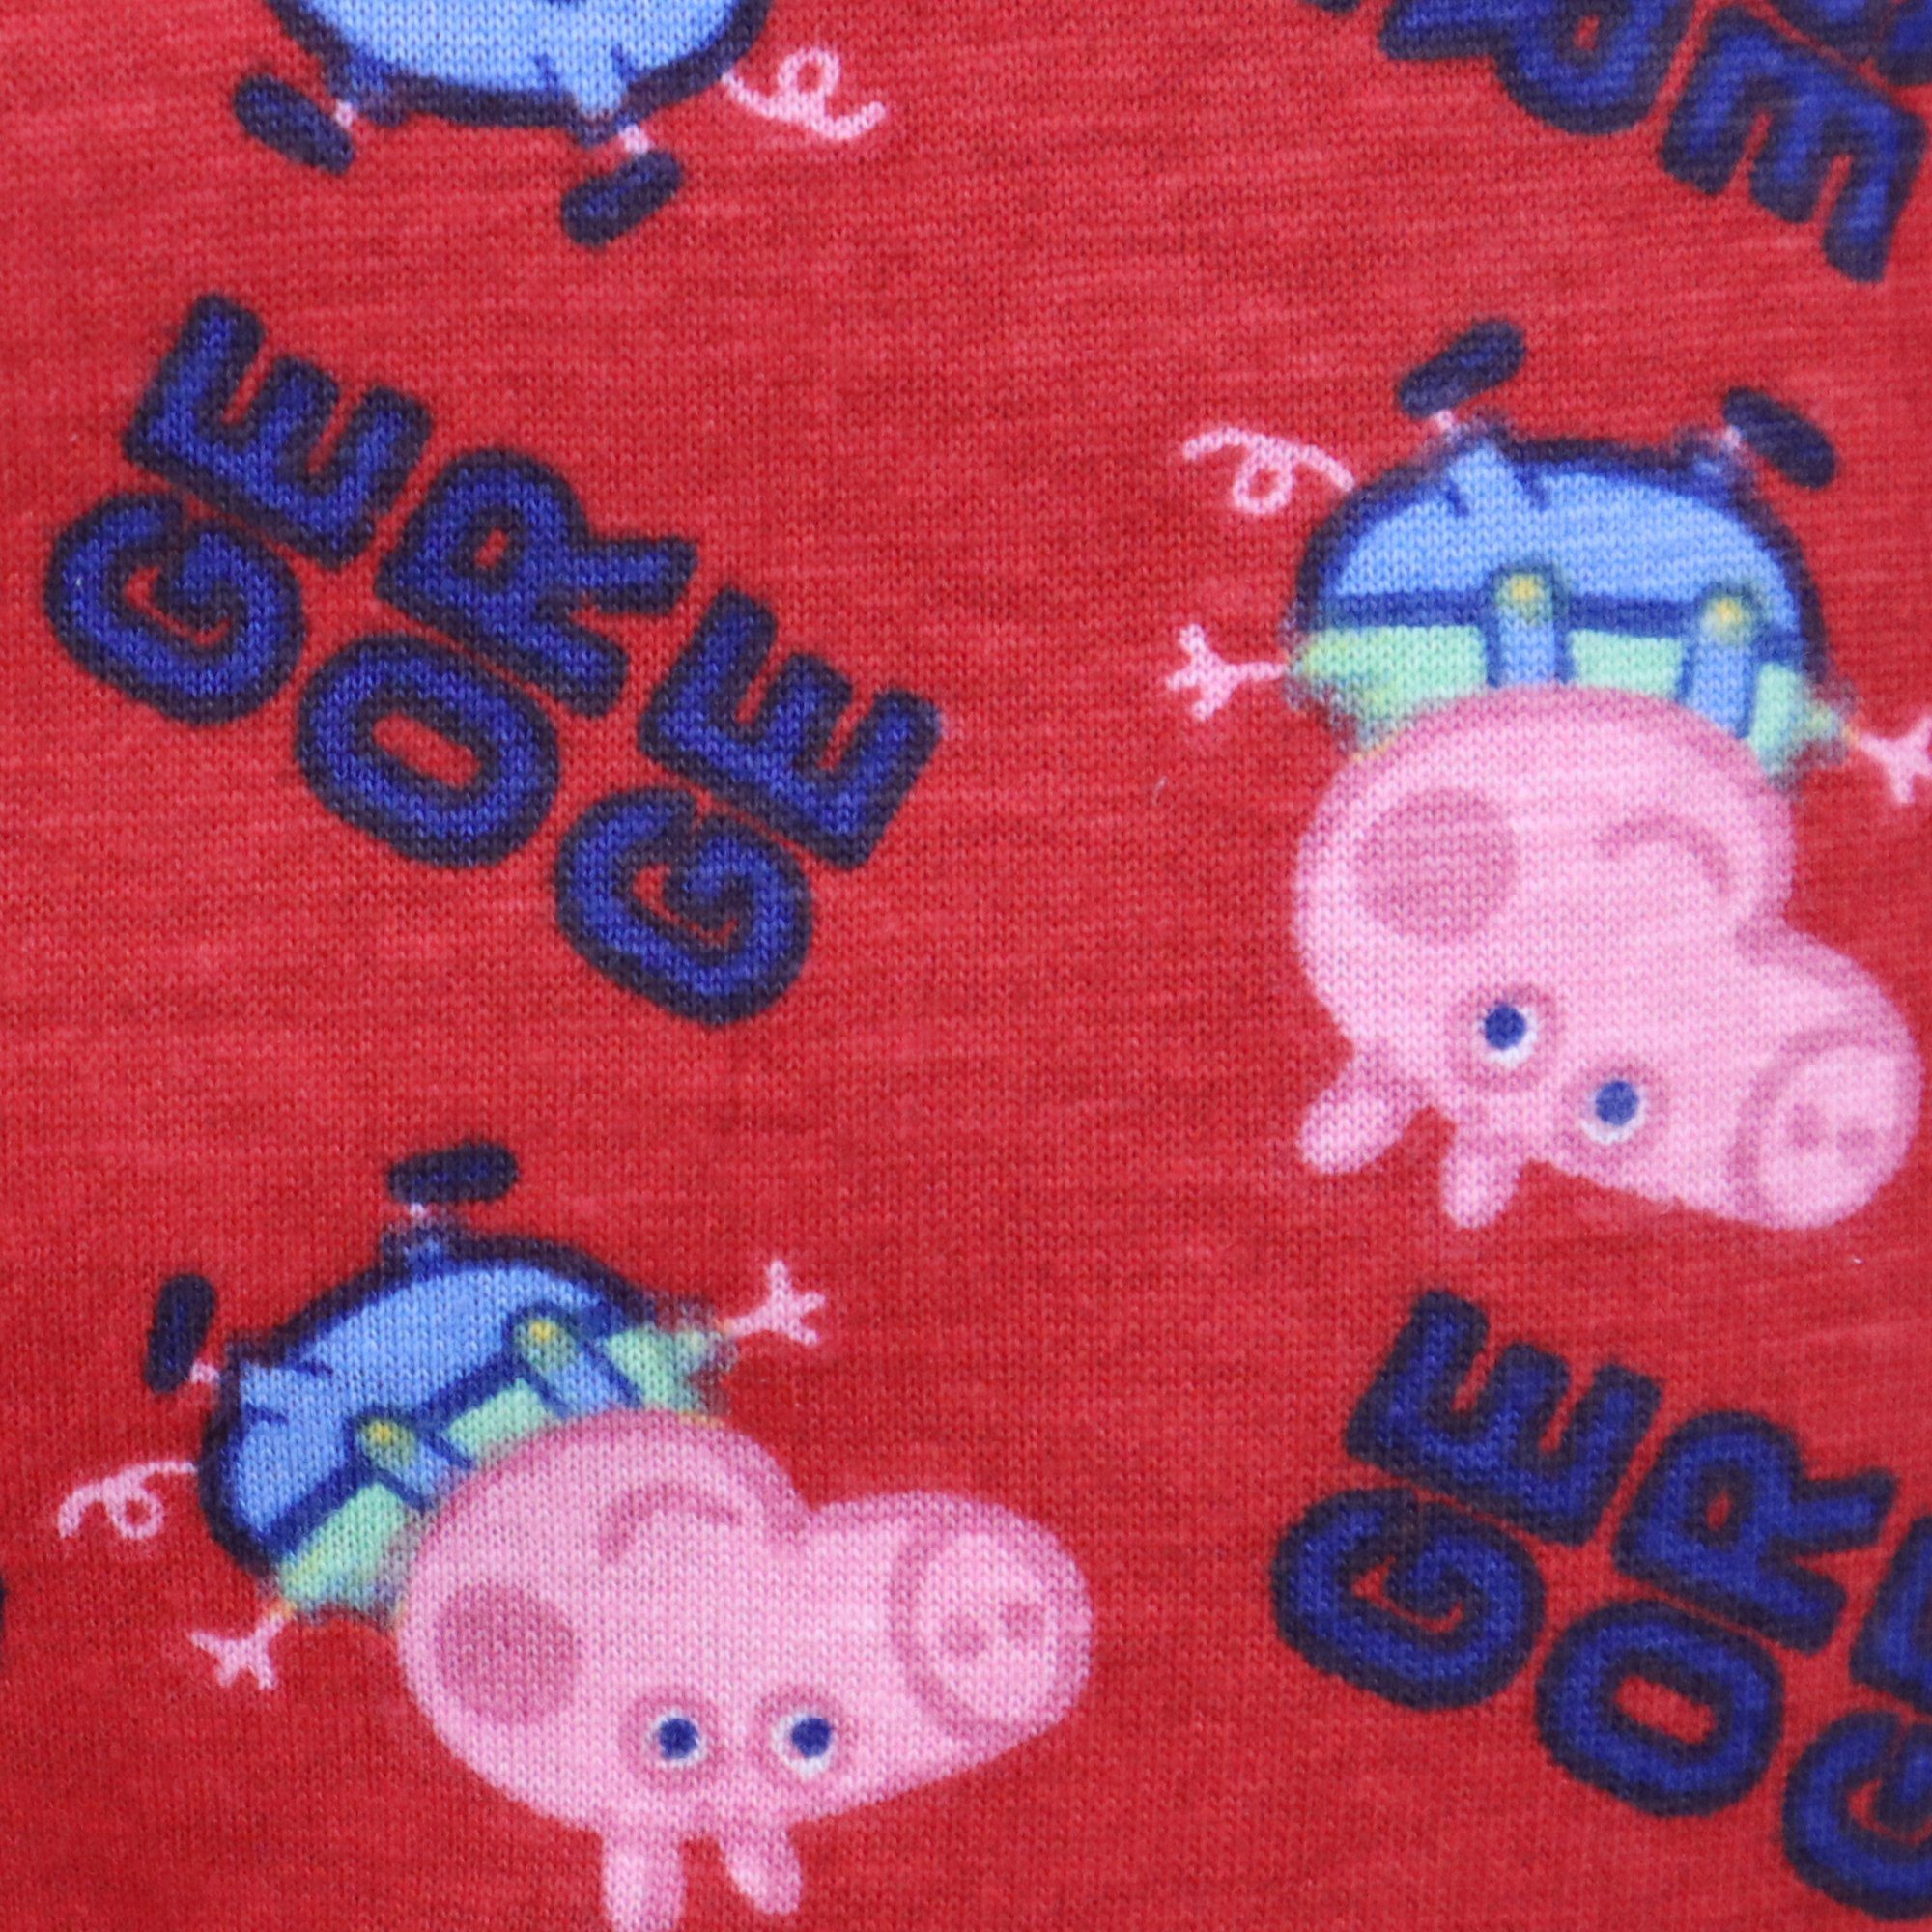 Peppa Pig Pyjama Peppa bis Kinder Gr. Blau 104 Pig Wutz George Jungen Schlafanzug 134